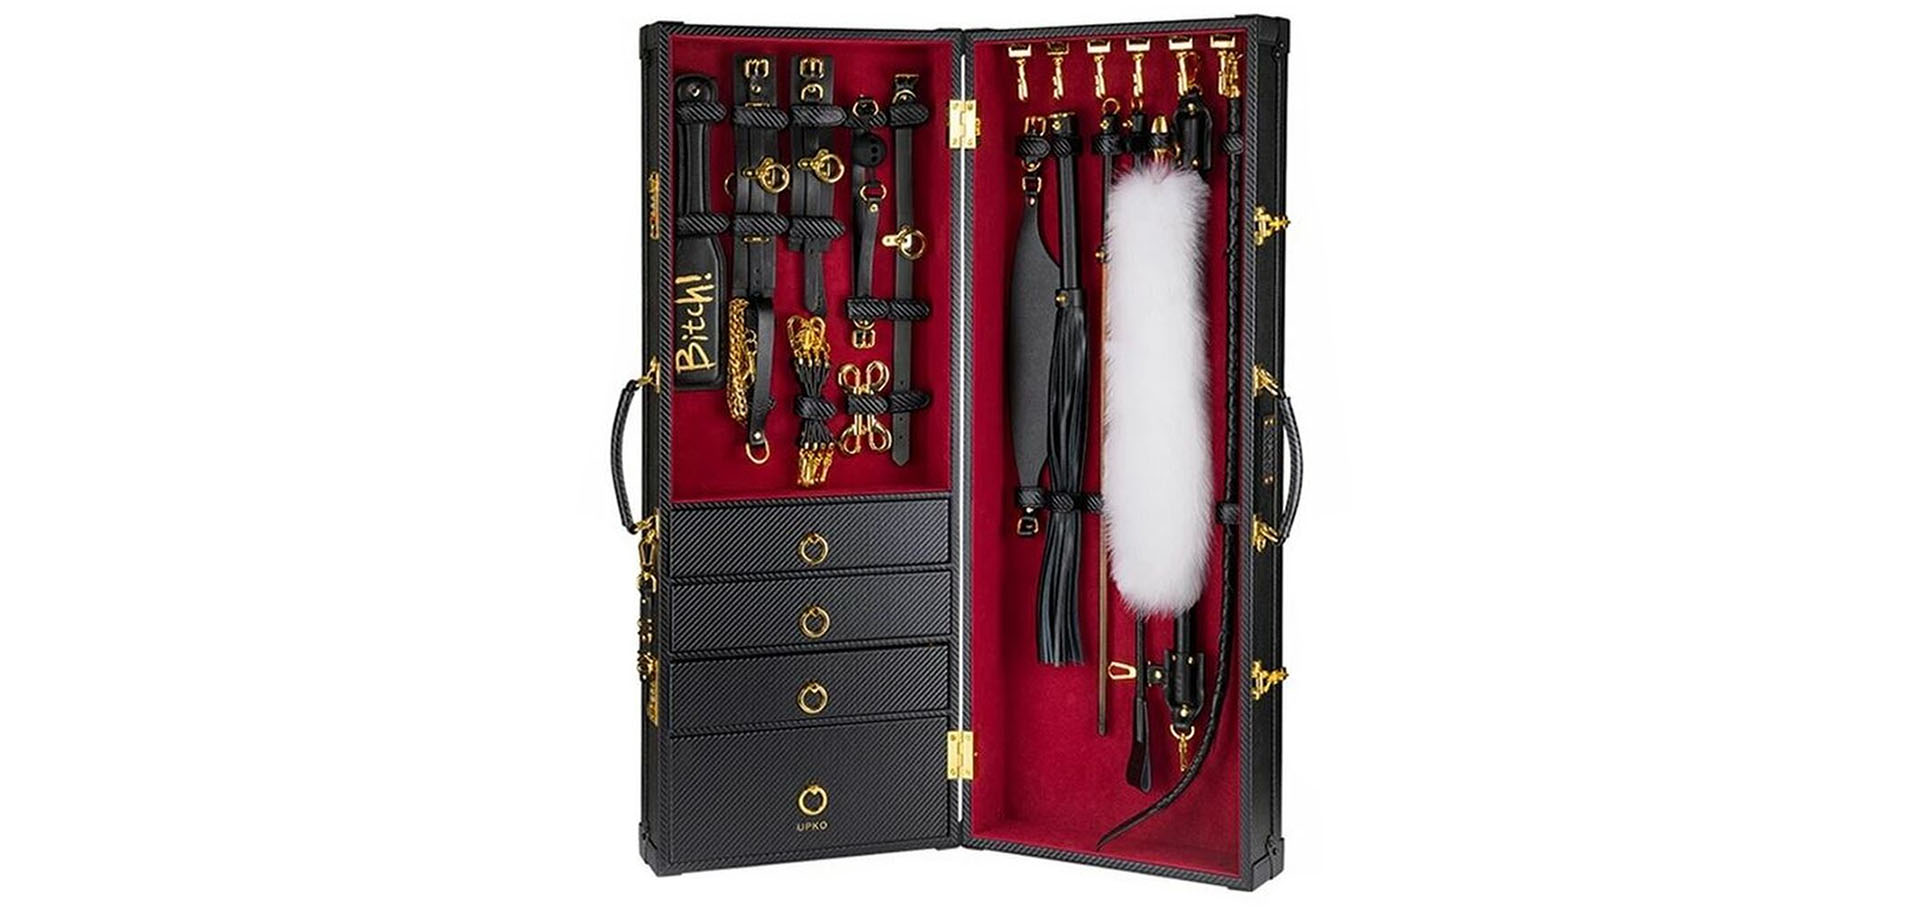 Luxury BDSM Adult Toy Storage.